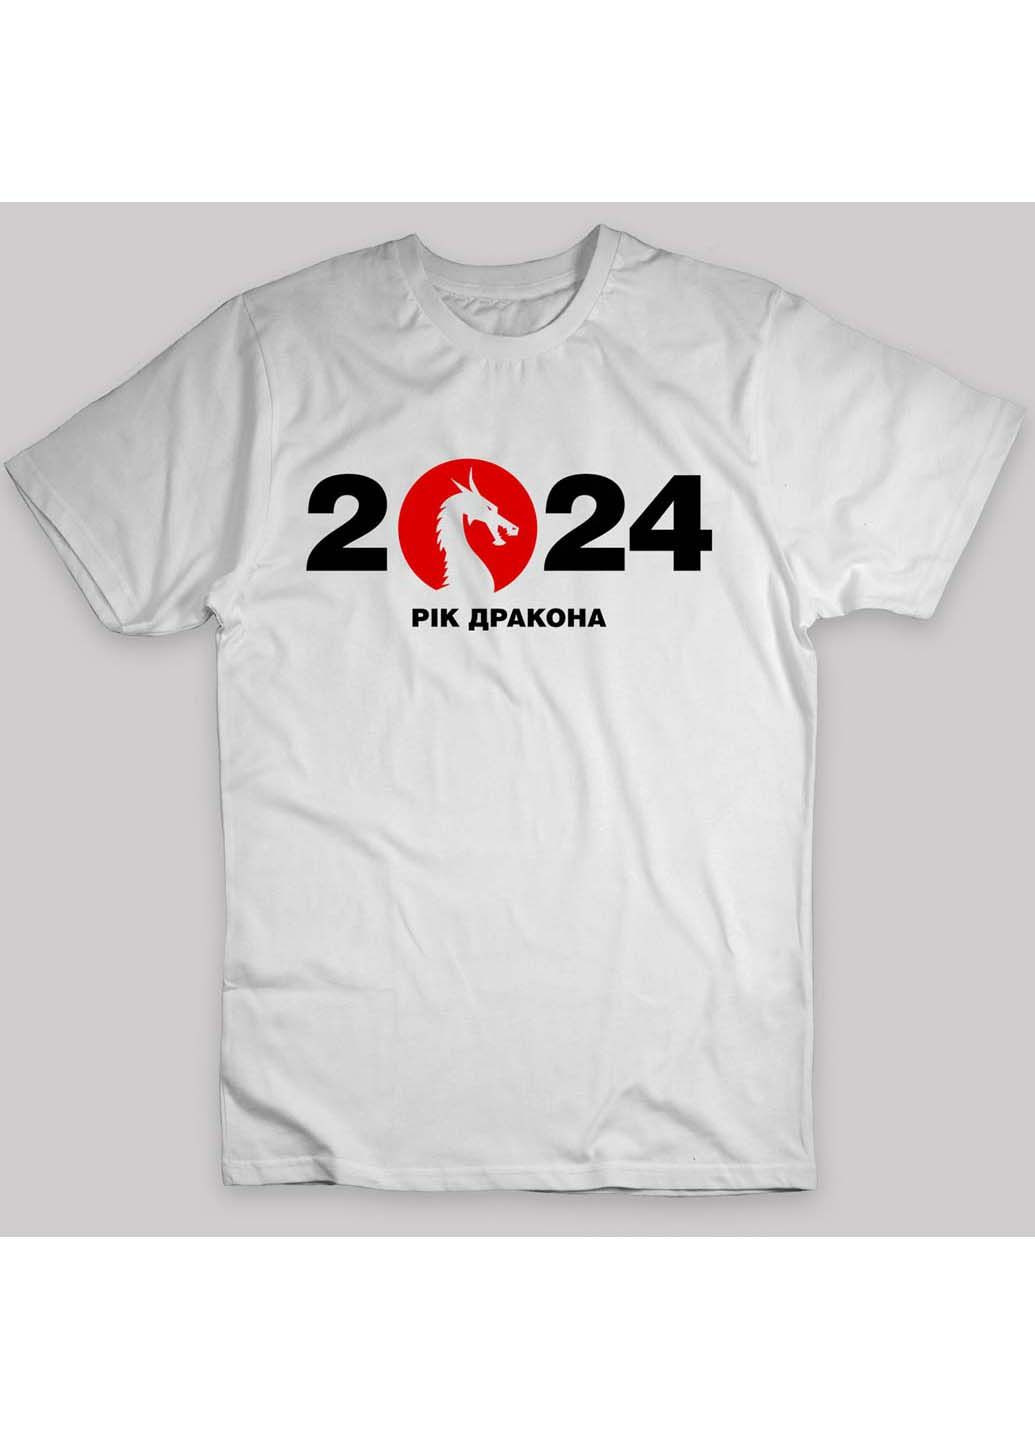 Біла футболка 2024 рік дракона 2024 year of the dragon Кавун